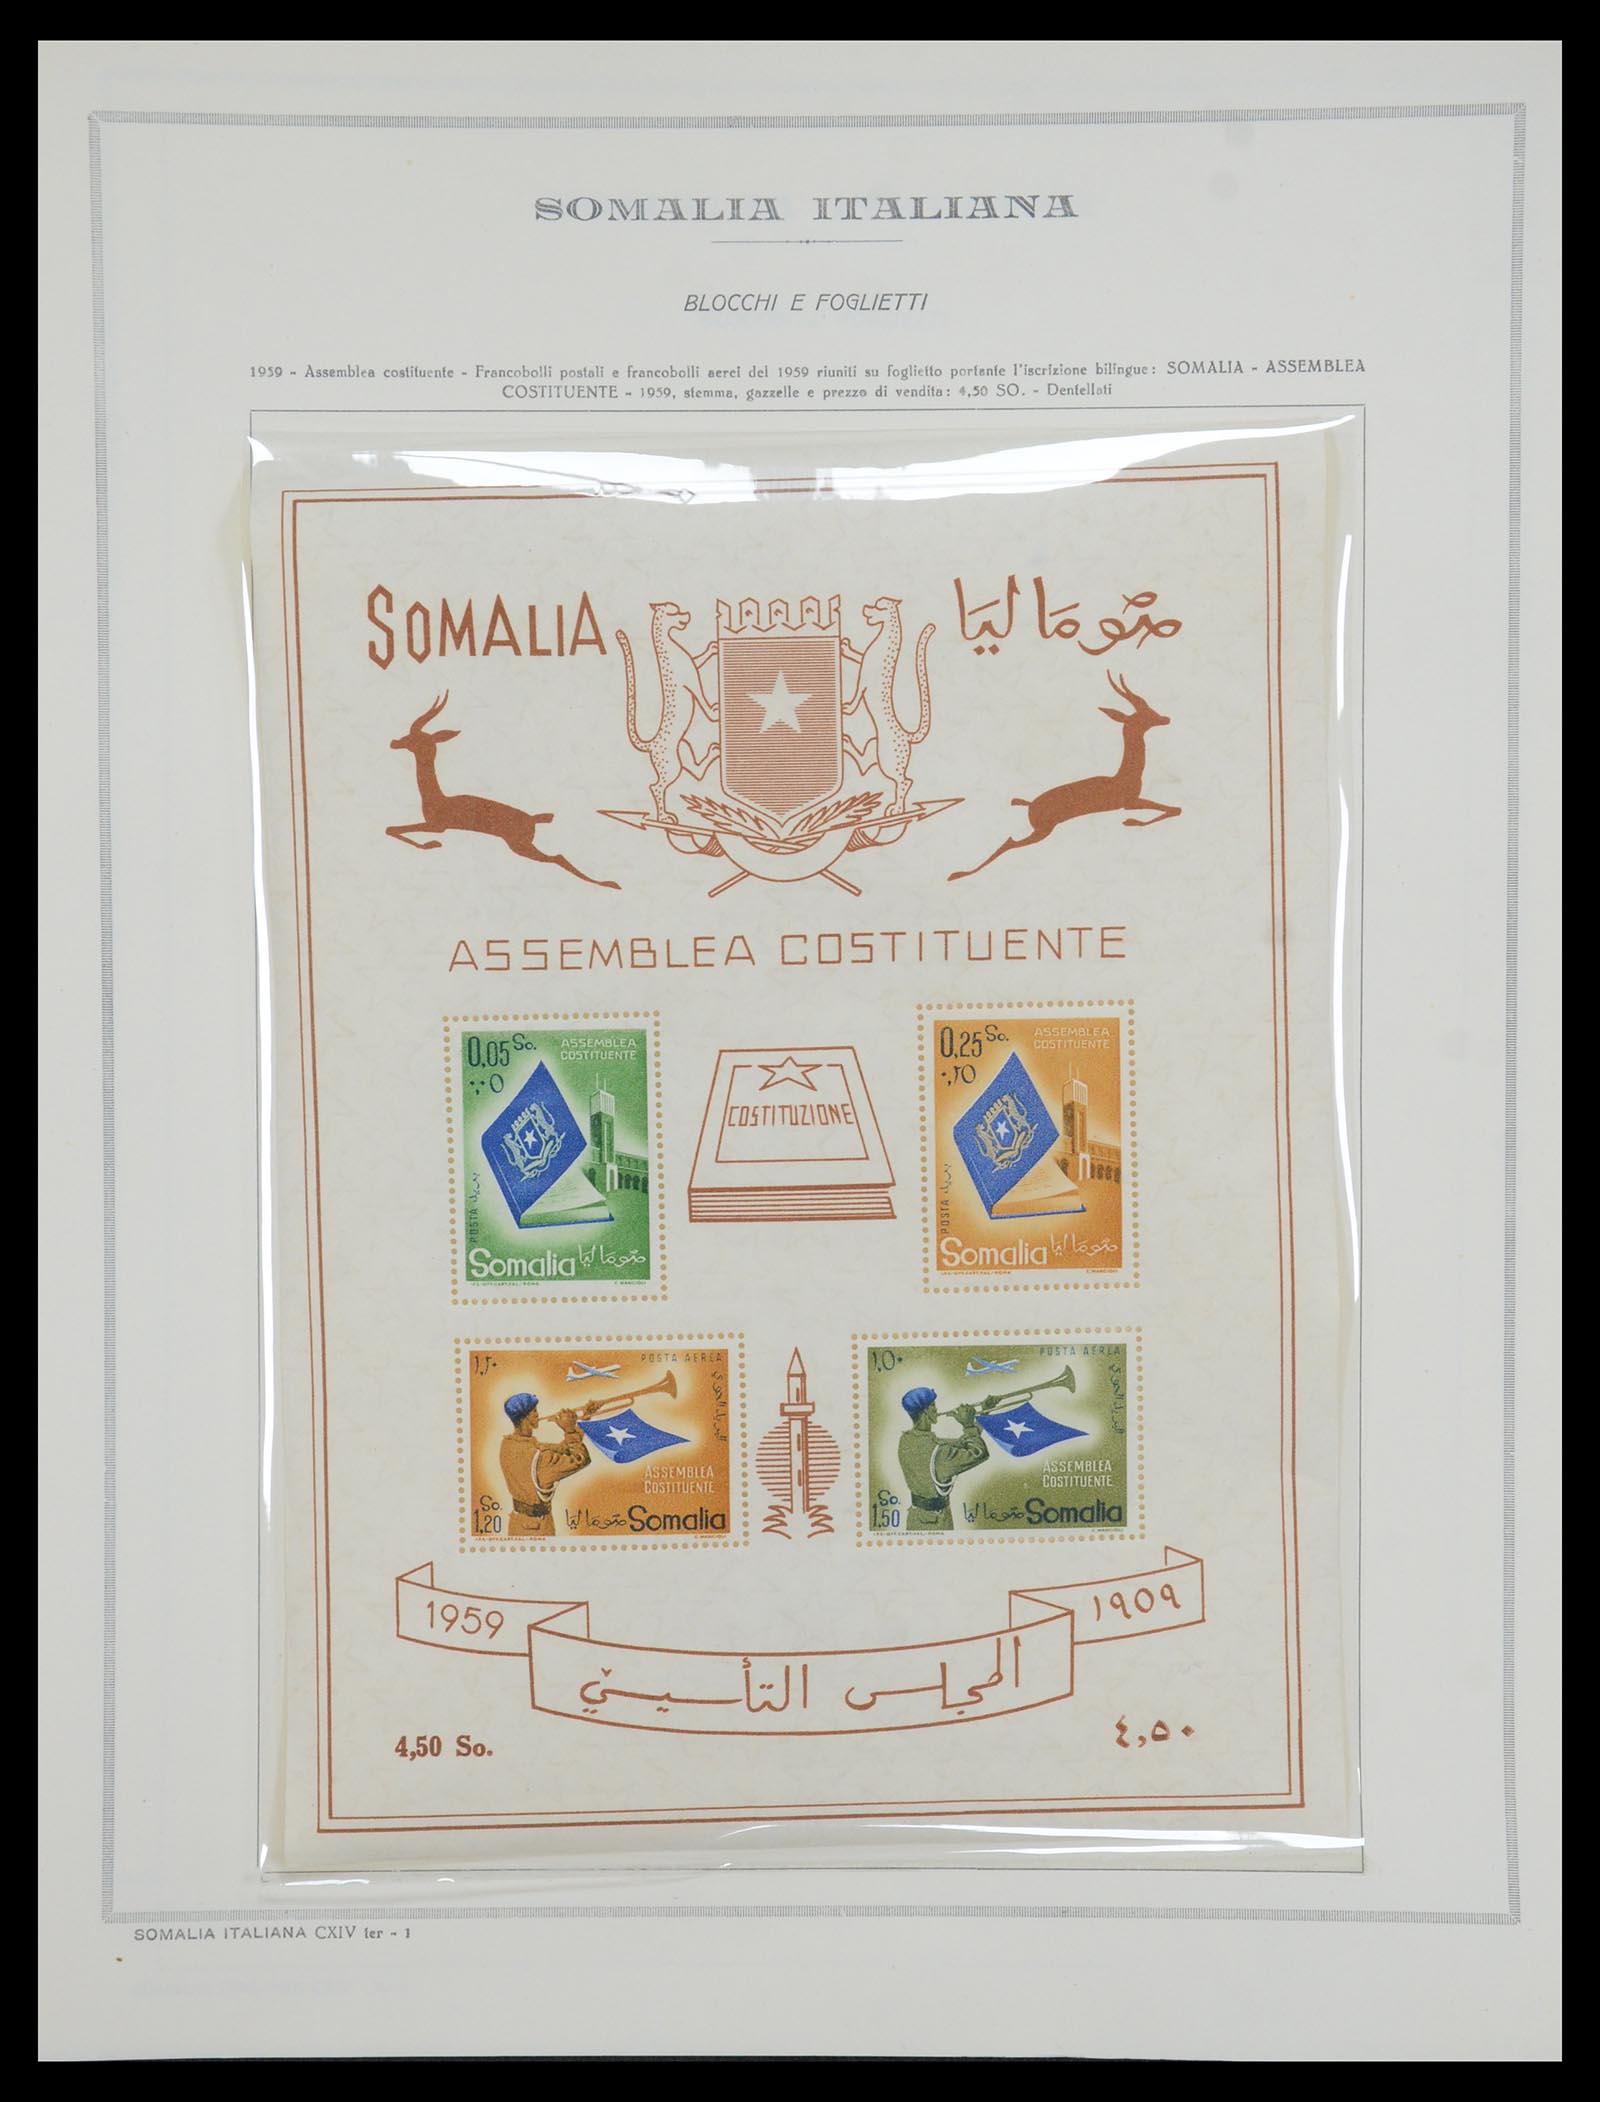 35328 072 - Stamp Collection 35328 Libya and Somalia 1952-1973.